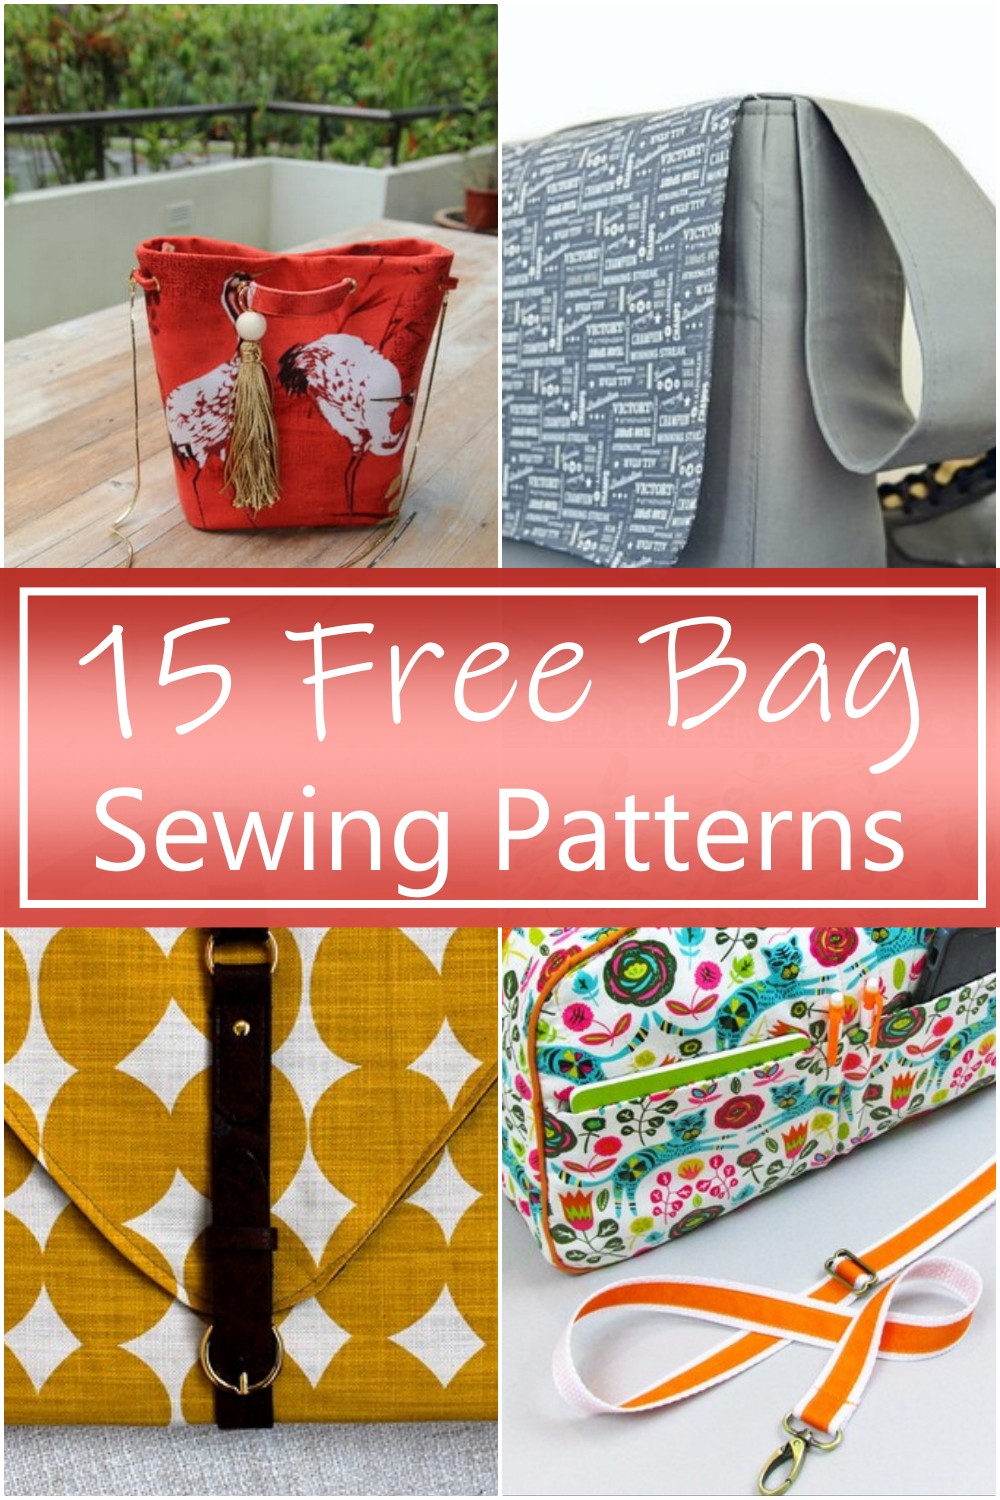 Free Bag Sewing Patterns